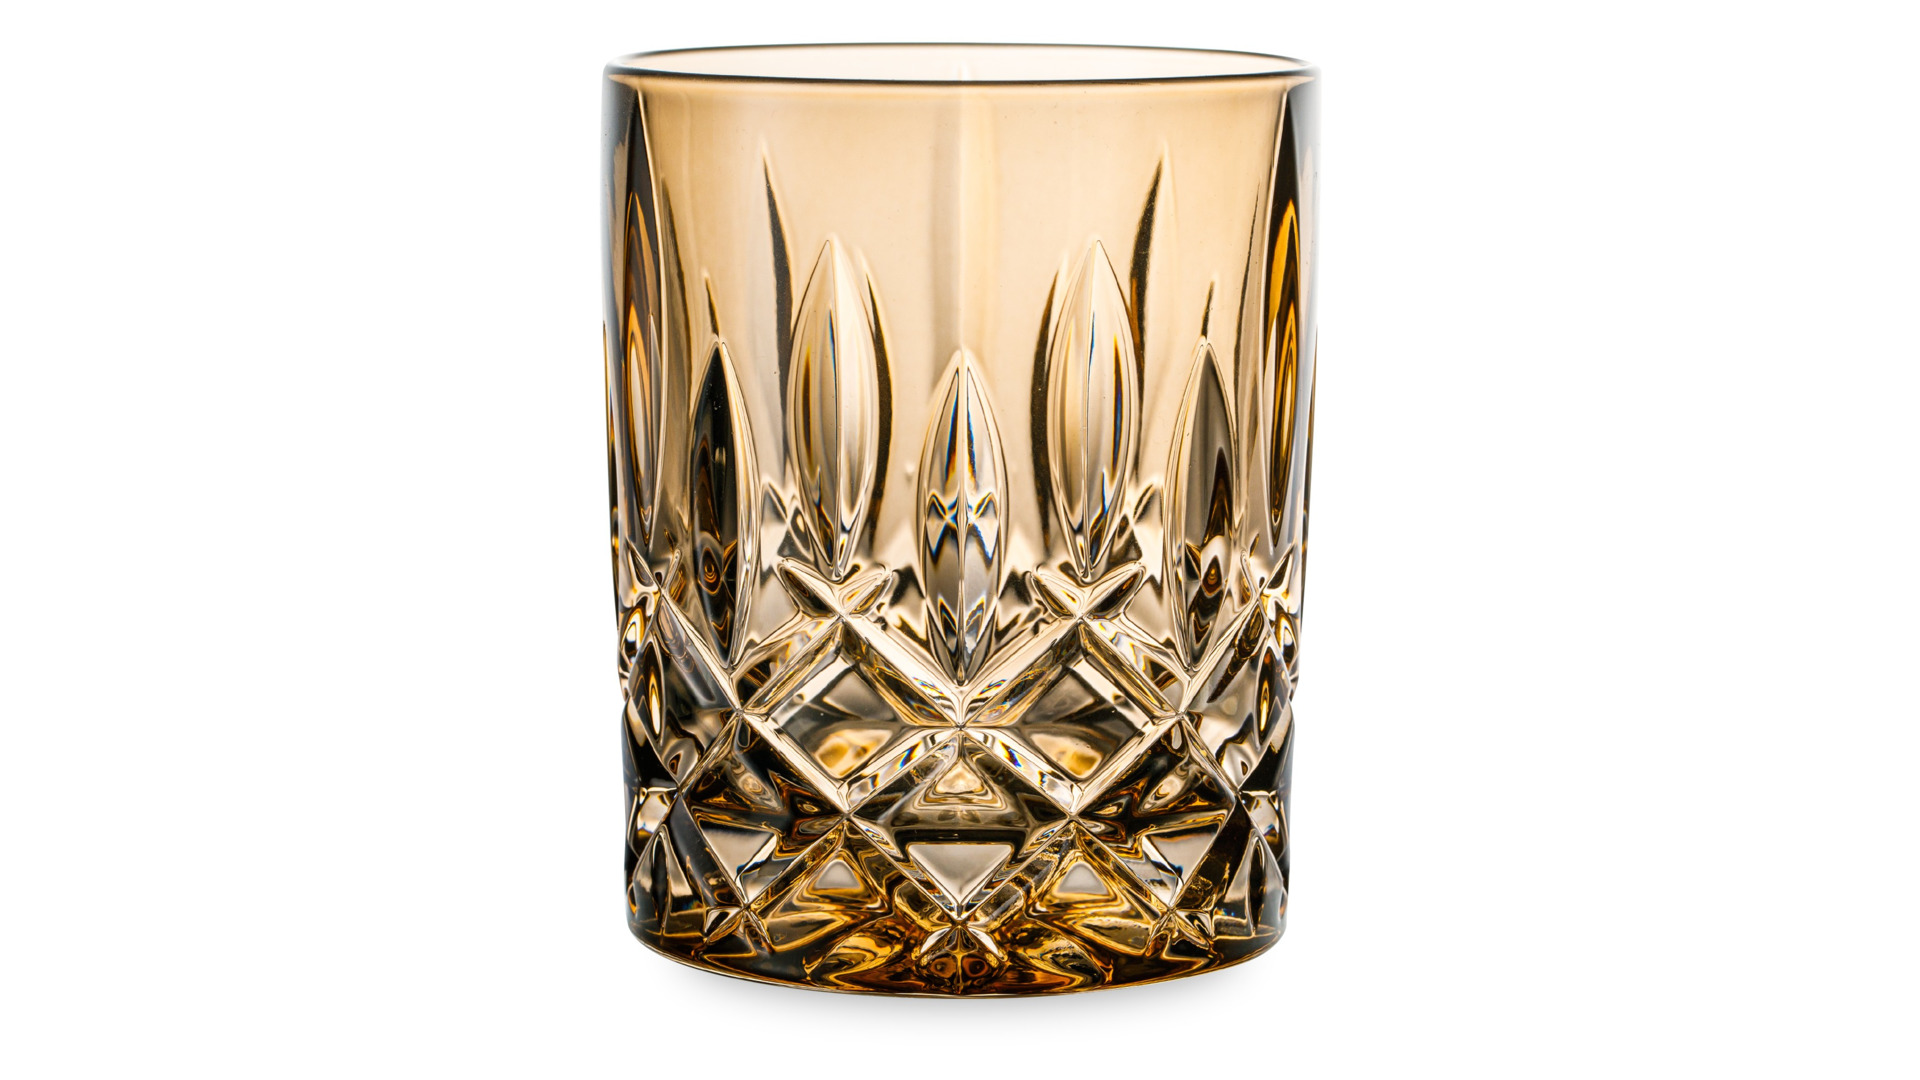 Набор стаканов для виски Nachtmann NOBLESSE COLORS 295 мл, 2 шт, стекло хрустальное, бронзовый, п/к